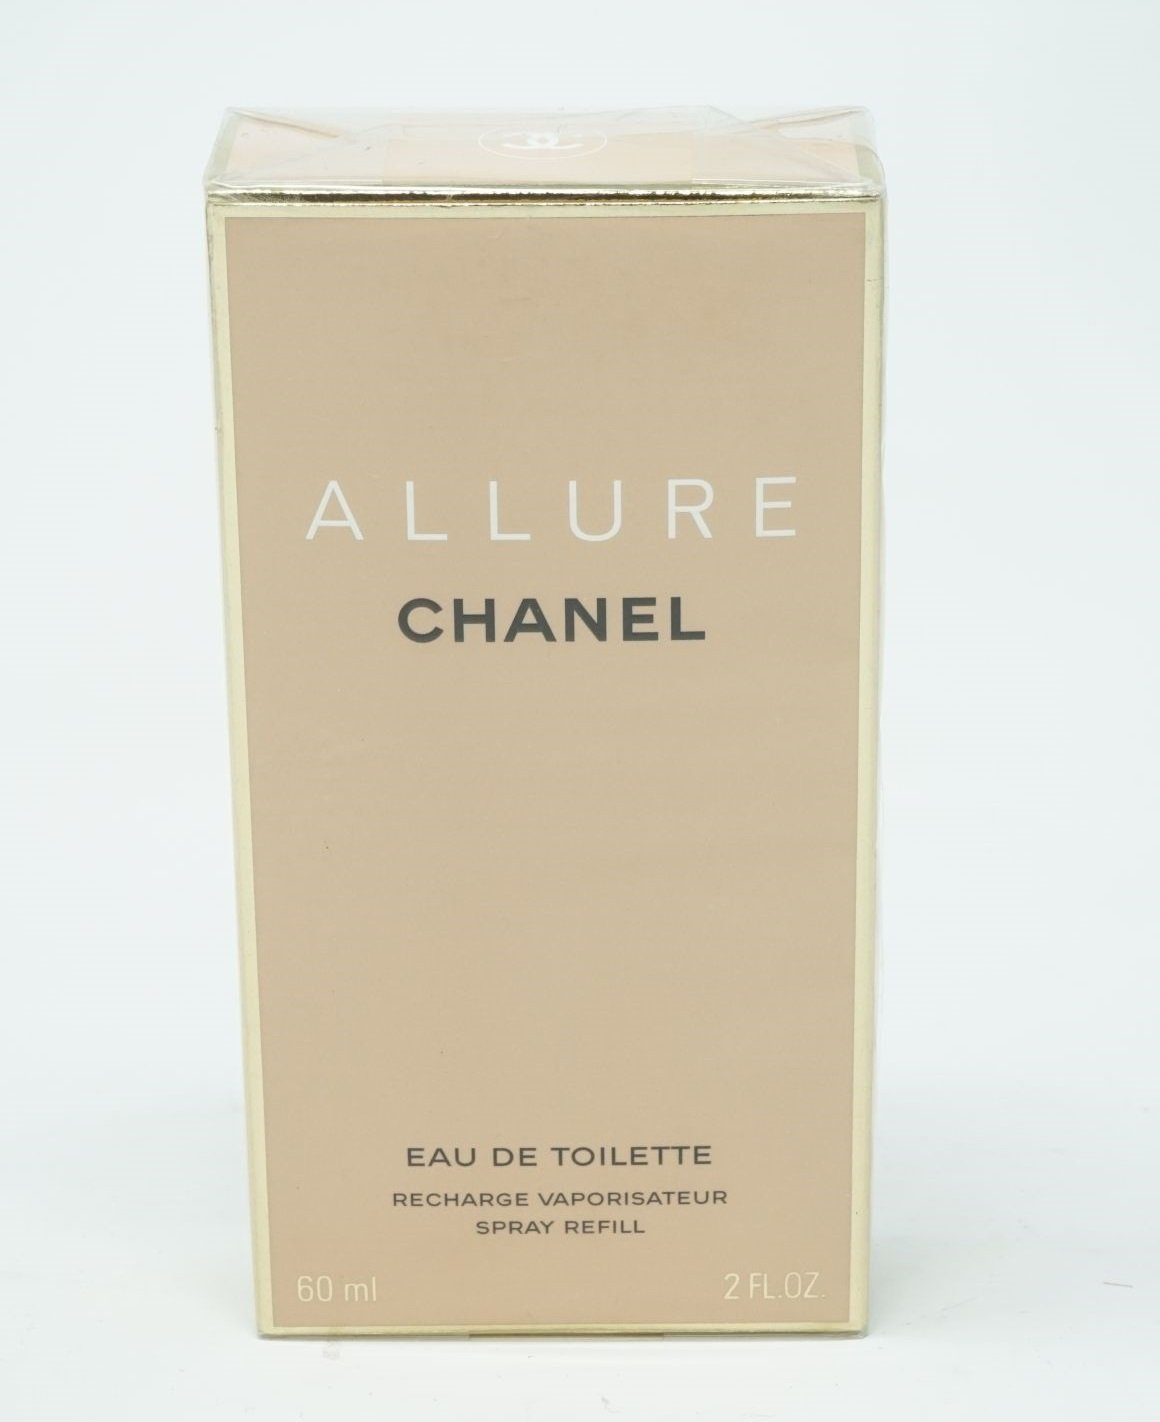 CHANEL Eau de Toilette Chanel Allure Eau de Toilette Spray Refill 60 ml